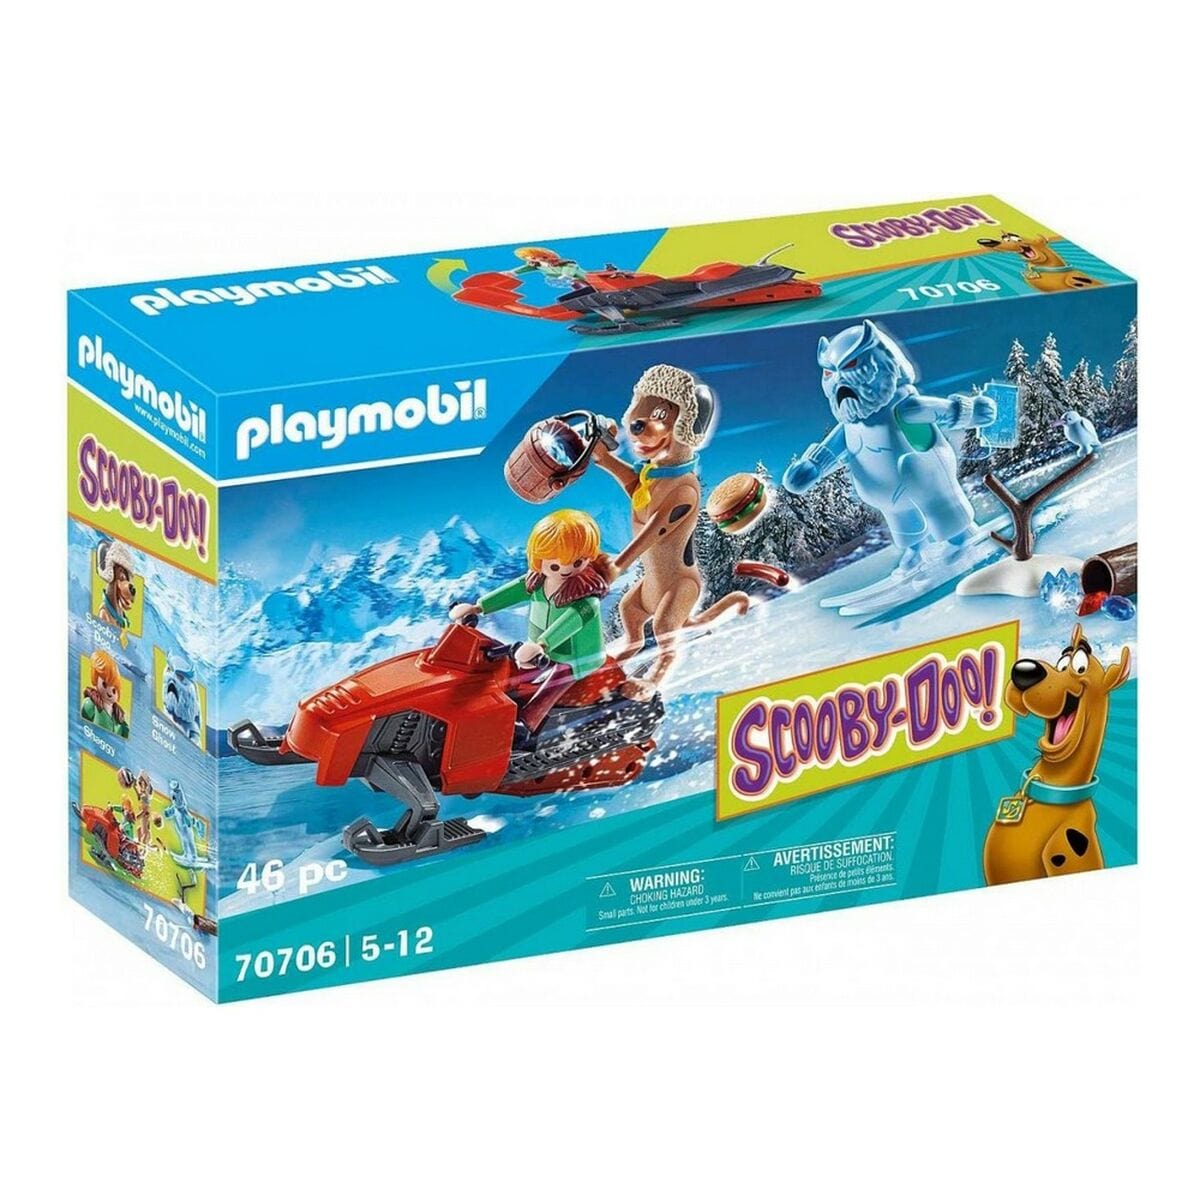 Playmobil Spielzeug | Kostüme > Spielzeug und Spiele > Weiteres spielzeug Playset Scooby Doo Adventure with Snow Ghost Playmobil 70706 (46 pcs)